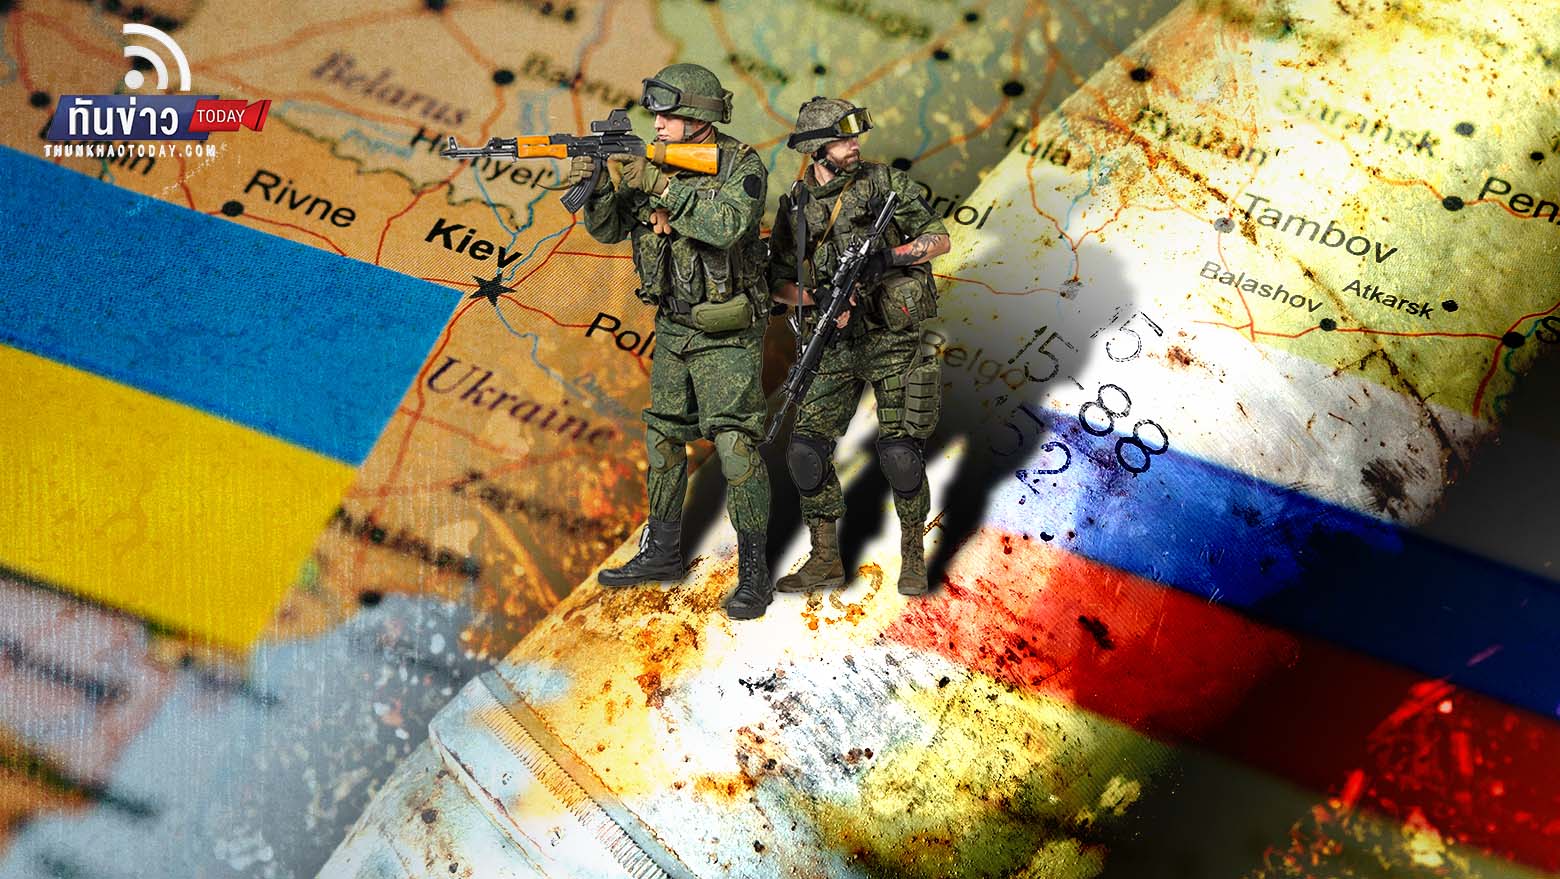 ““ปูติน” ย้ำรัสเซียจะปักหลักต่อสู้ในยูเครนไปอีกนาน และนิวเคลียร์มีไว้ป้องกันตัวไม่ชิงโจมตีก่อน